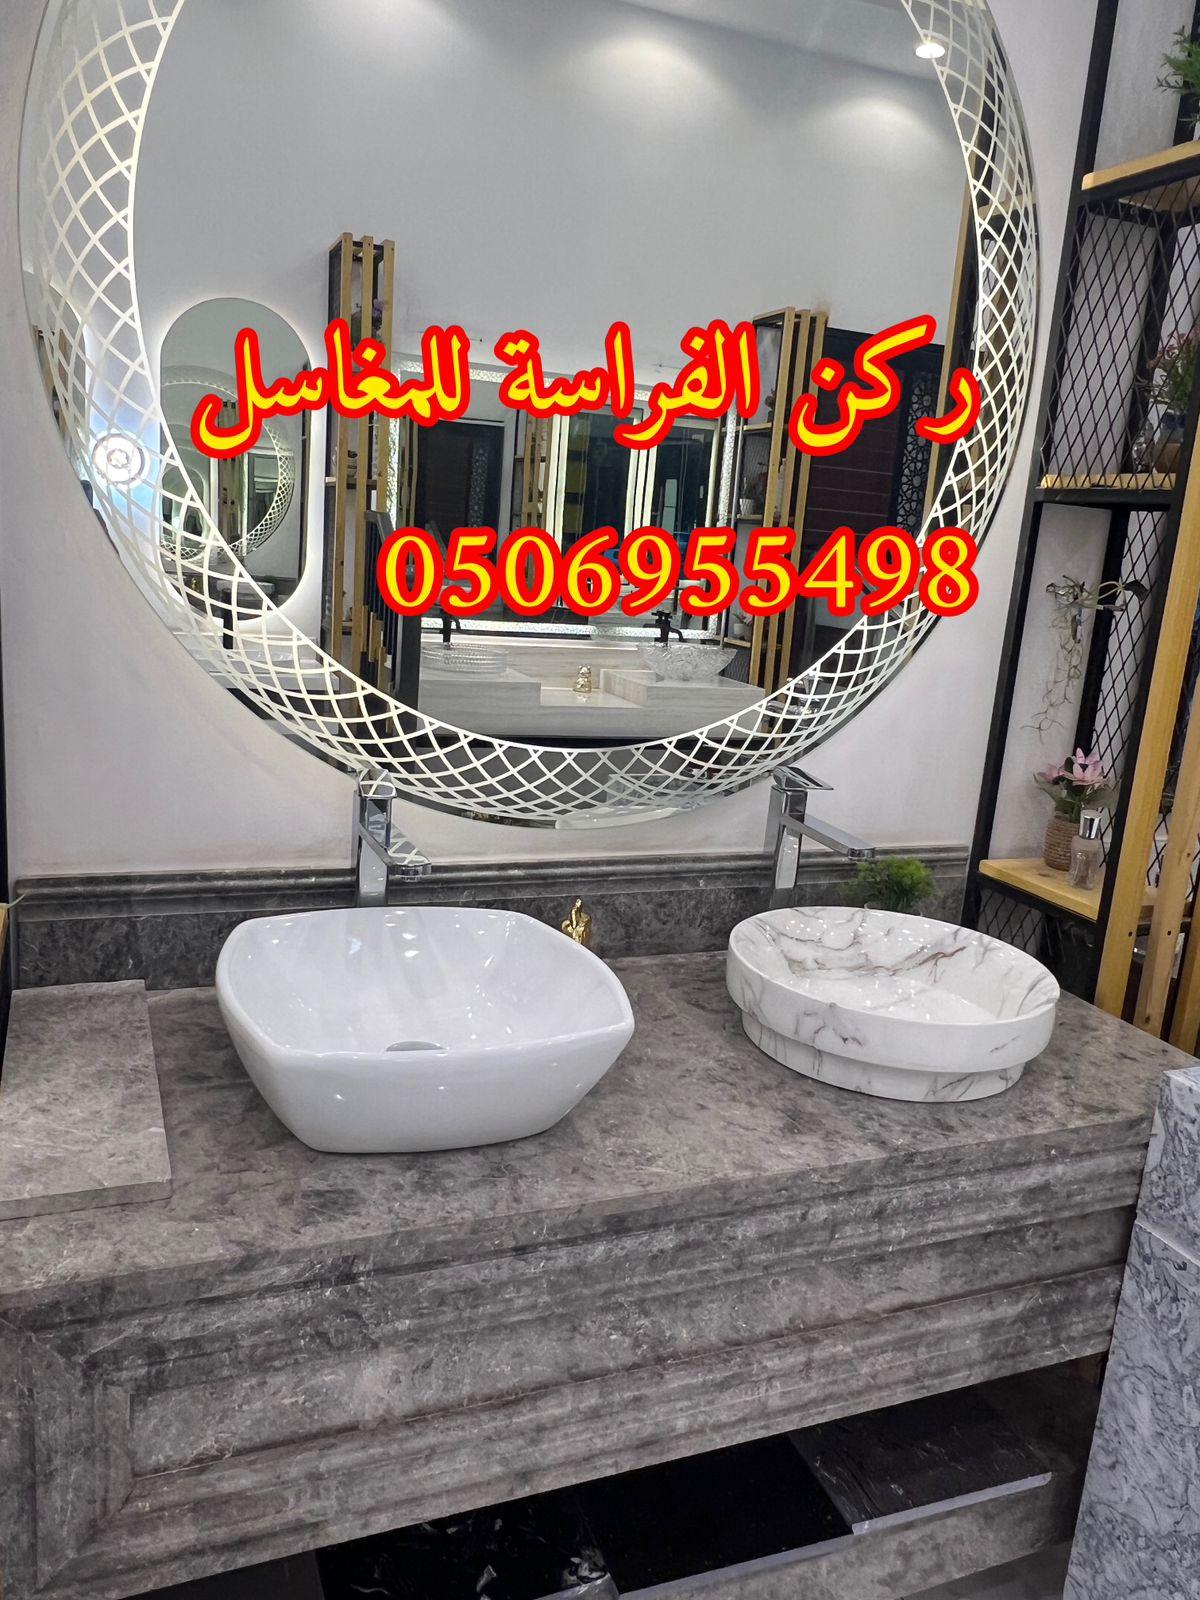 الرياض - مغاسل حمامات رخام مودرن فخمة في الرياض,0506955498 391858653